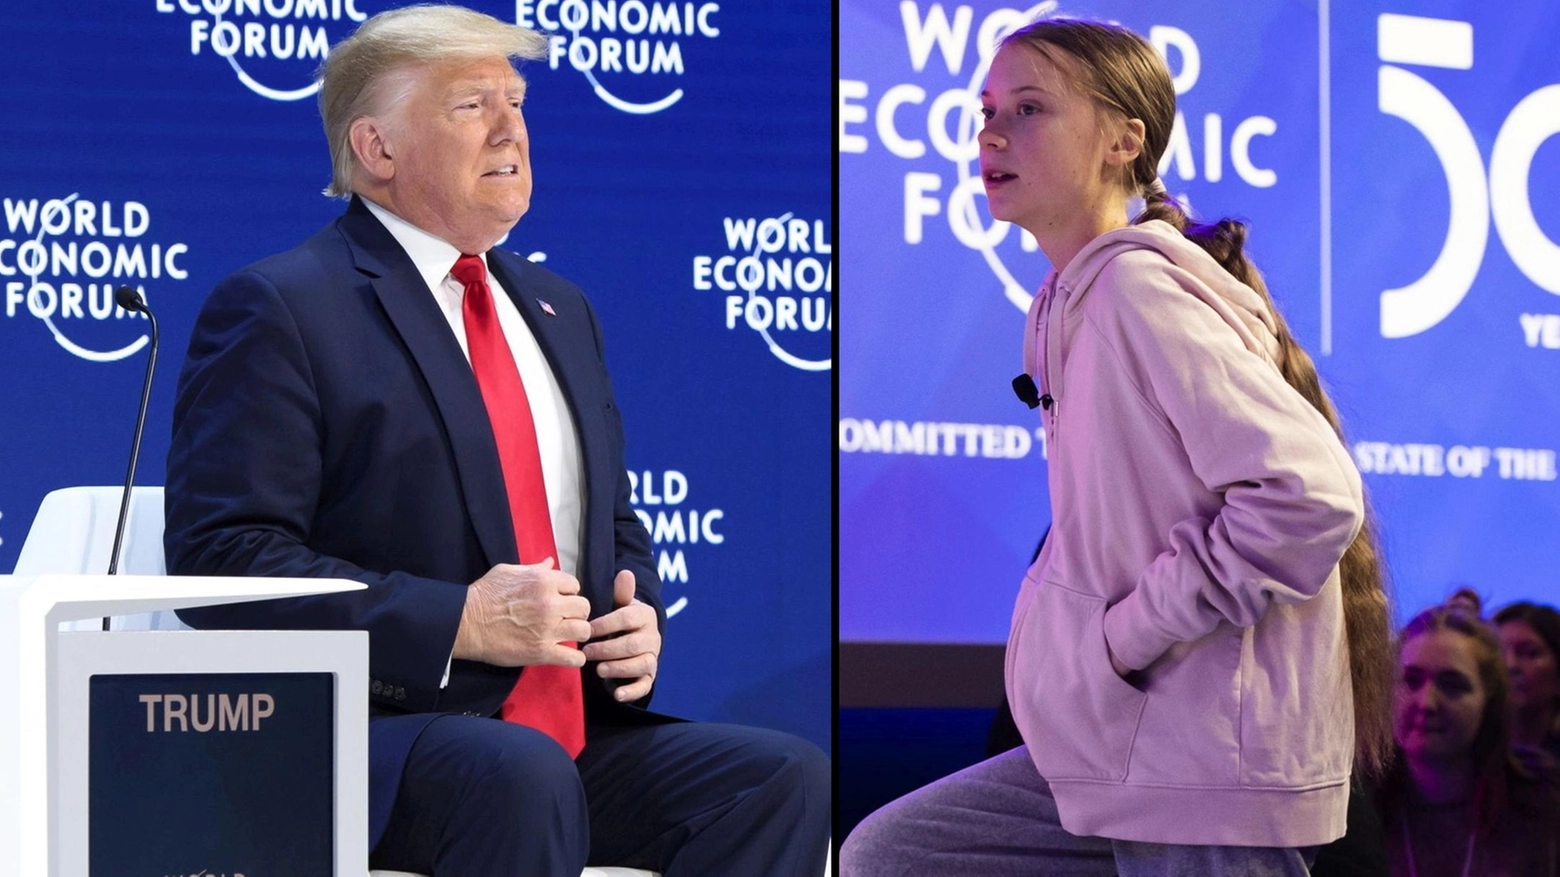 A Davos 2020 i protagonisti sono Trump e Greta Thunberg